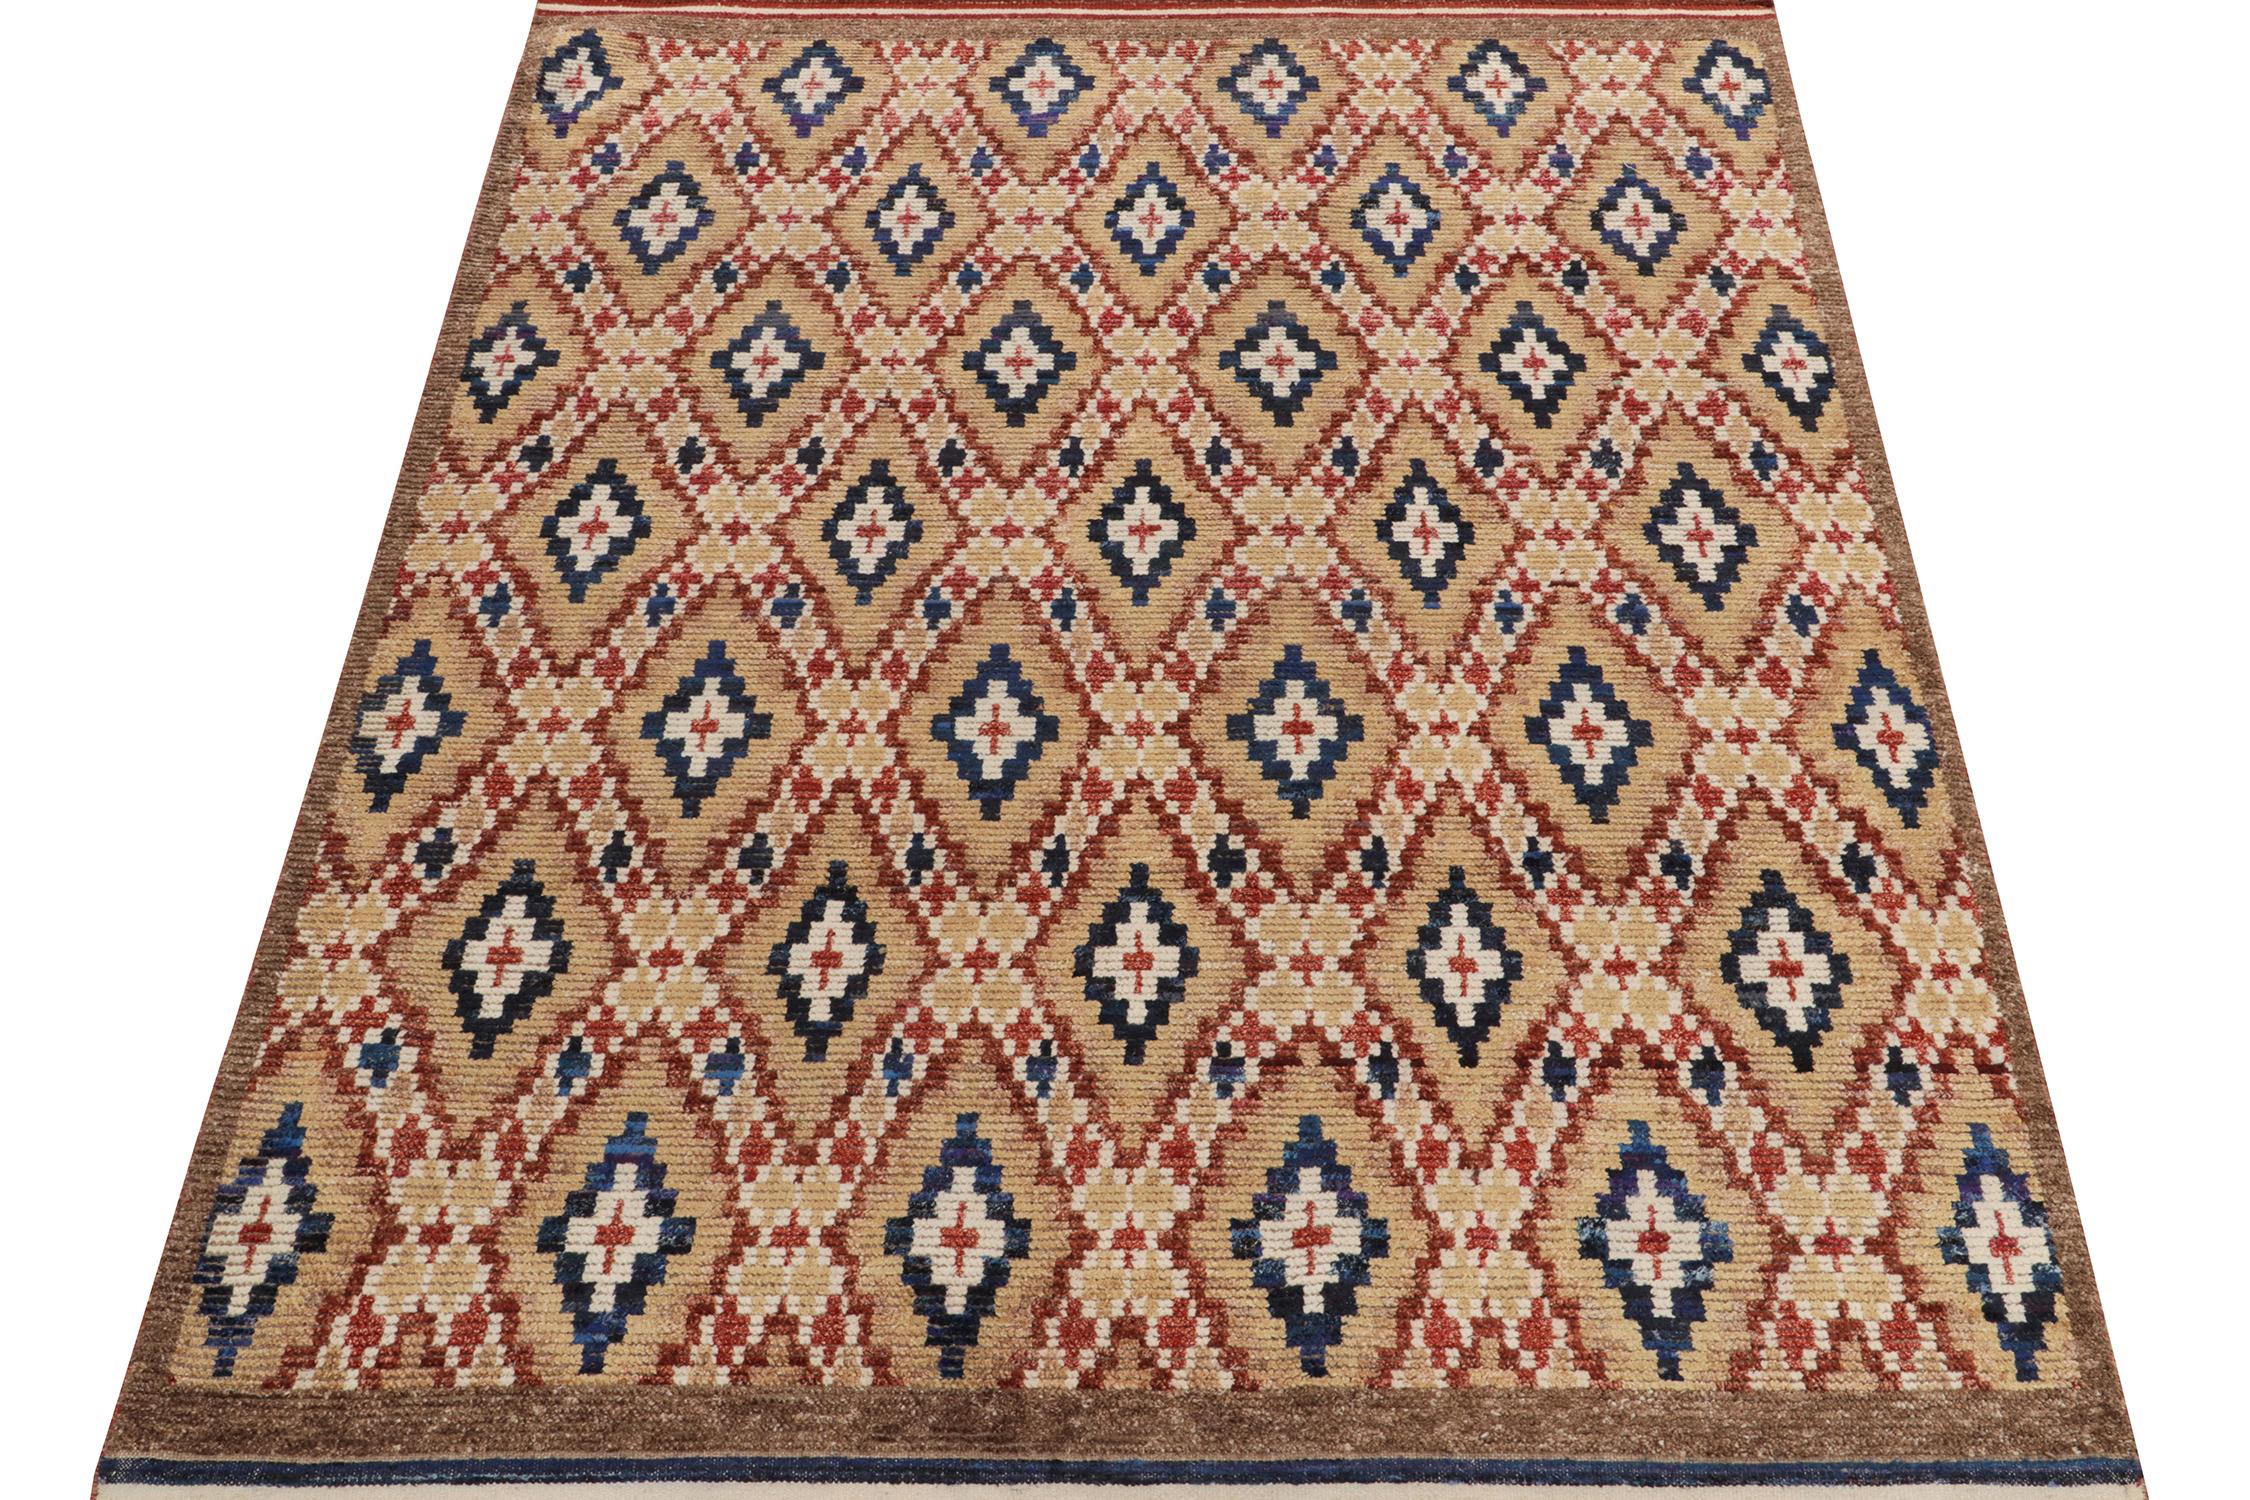 Dieser handgeknüpfte Wollteppich im Format 6x8 aus unserer Moroccan Collection ist eine einzigartige Interpretation des berühmten Stammeswebedesigns.

Inspiriert vom titelgebenden Nomadenstil ist das Stück mit einer Hoch-Tief-Struktur versehen, die